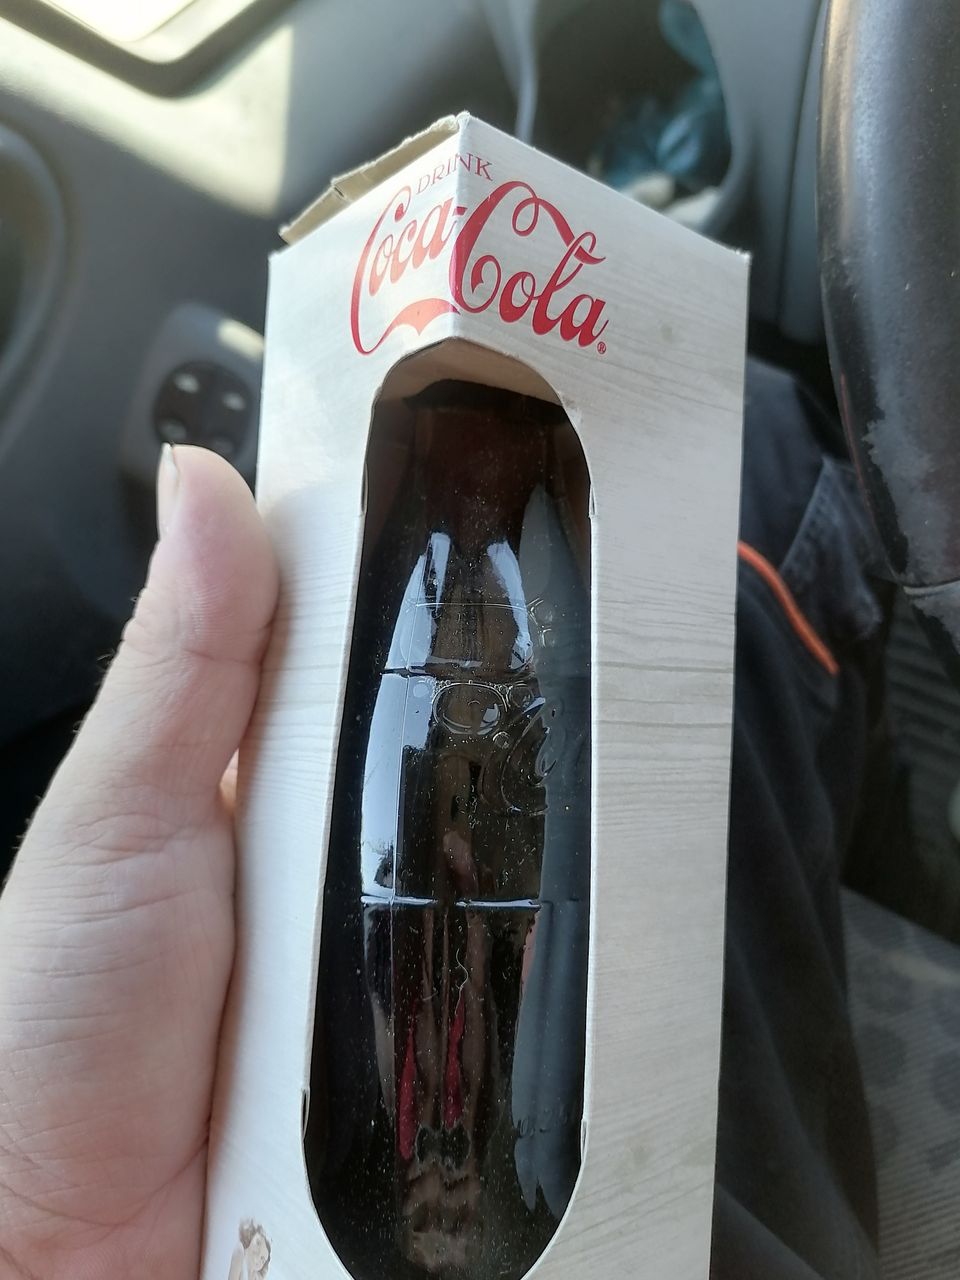 Coca cola pullo